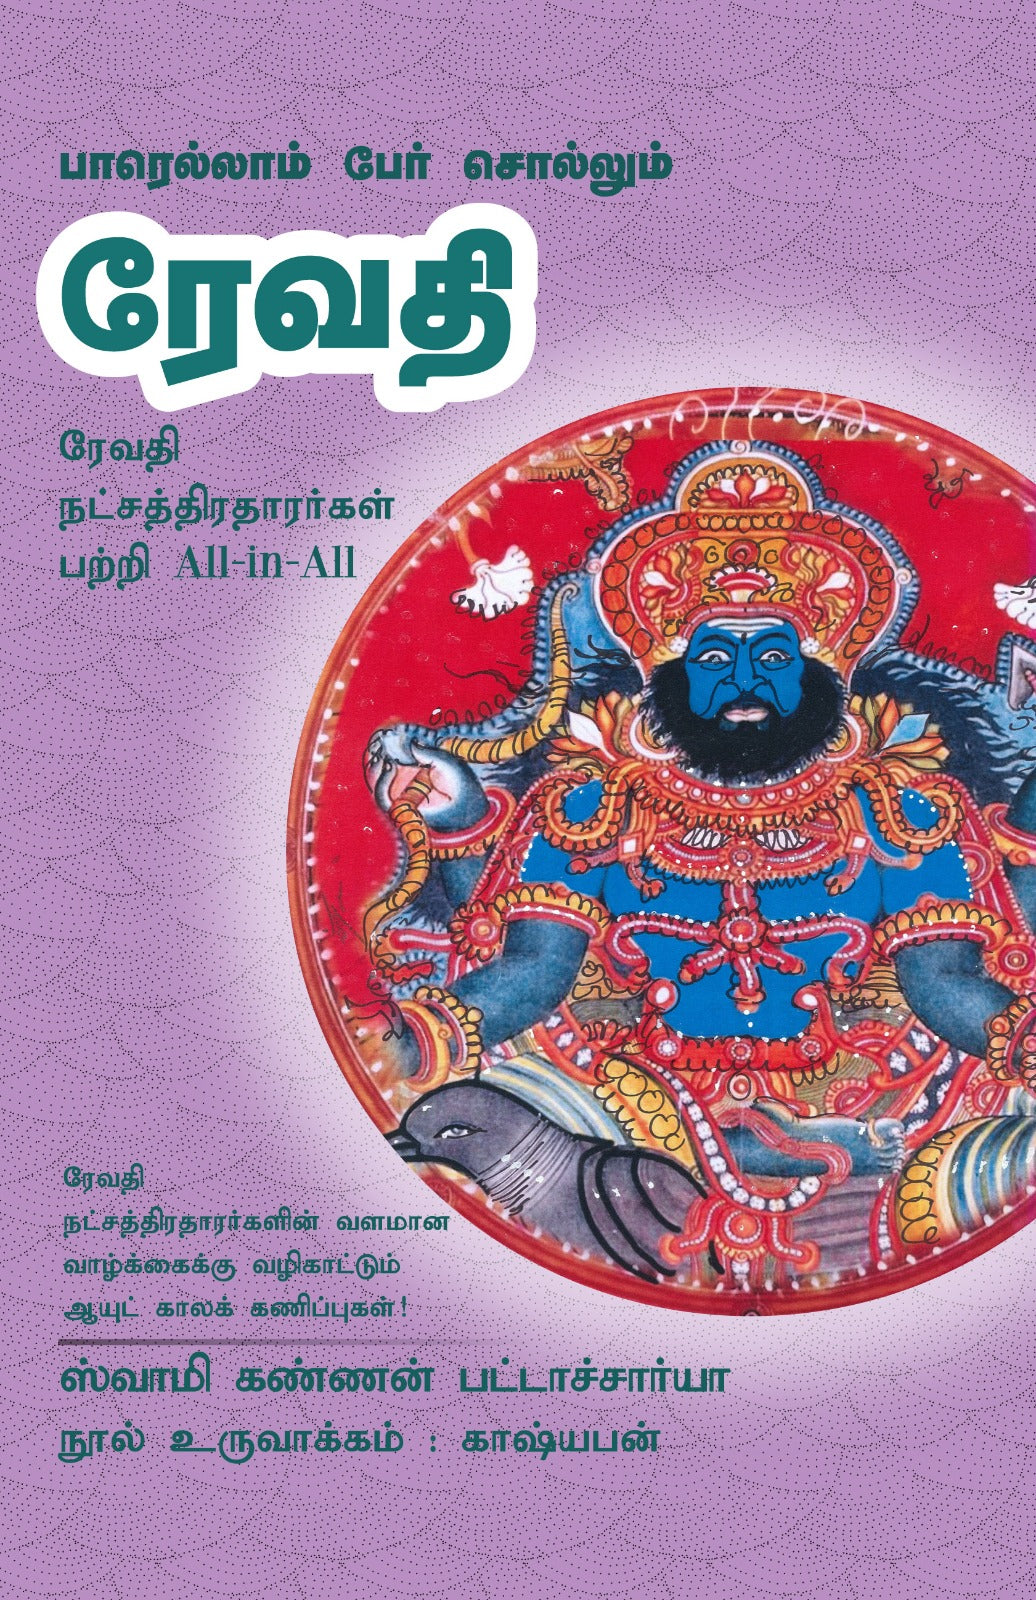 ரேவதி- Parellam Per Sollum Revathi All-in-All About Revathi Nakshatra- Tamil